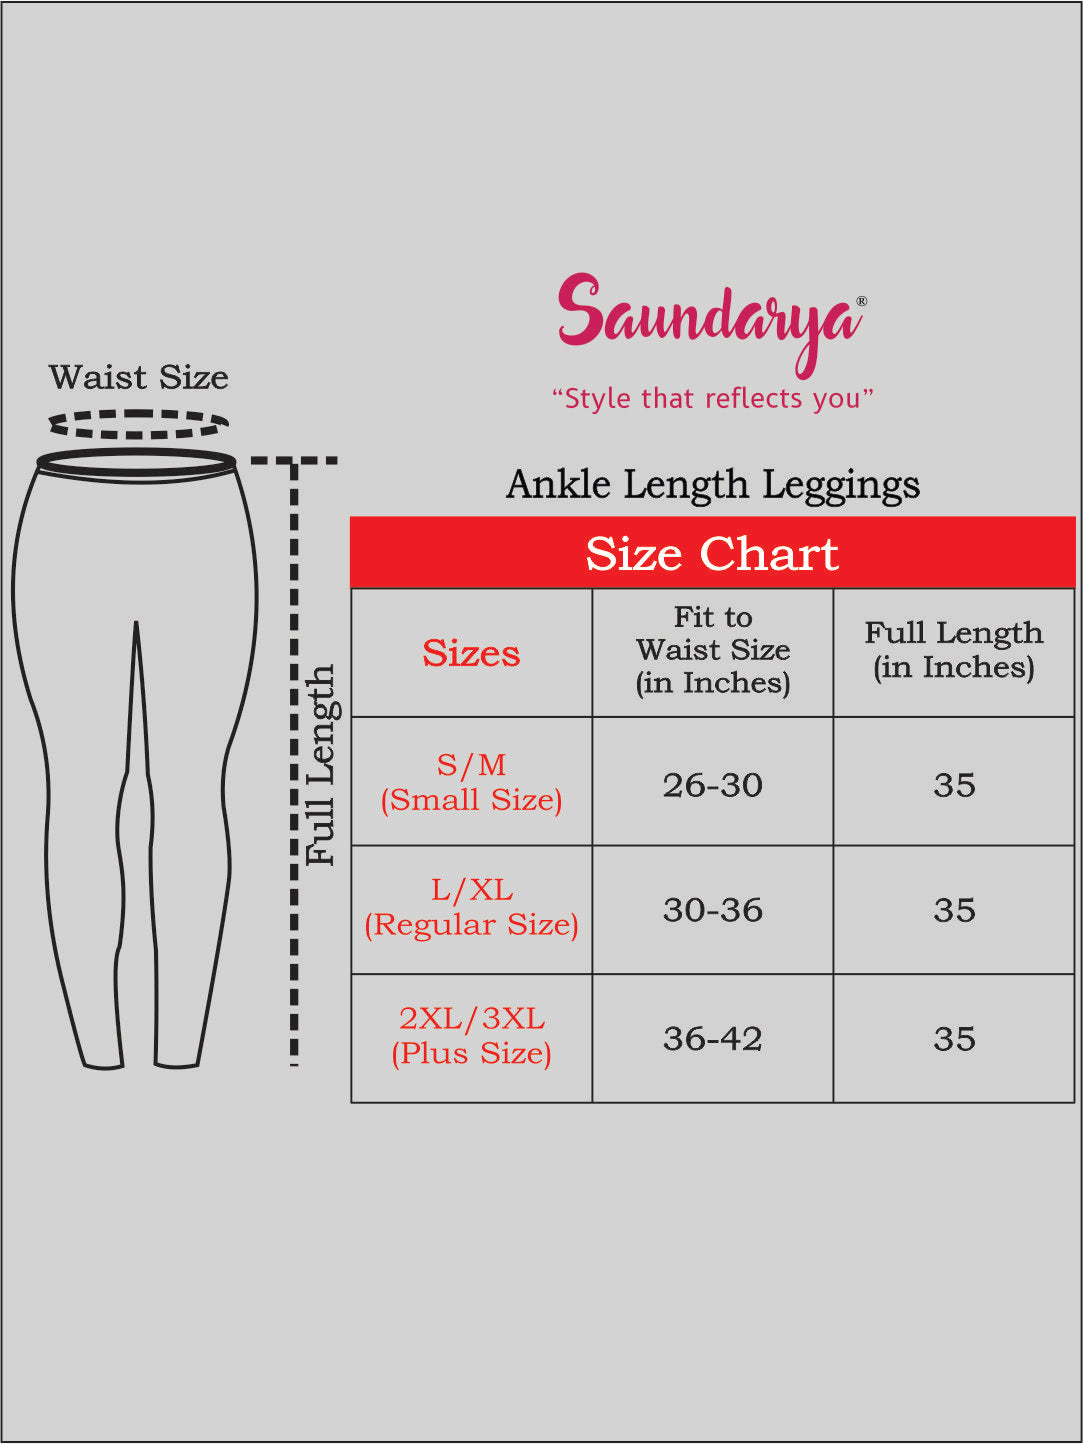 Saundarya Women's Black Ankle Length Leggings Cotton